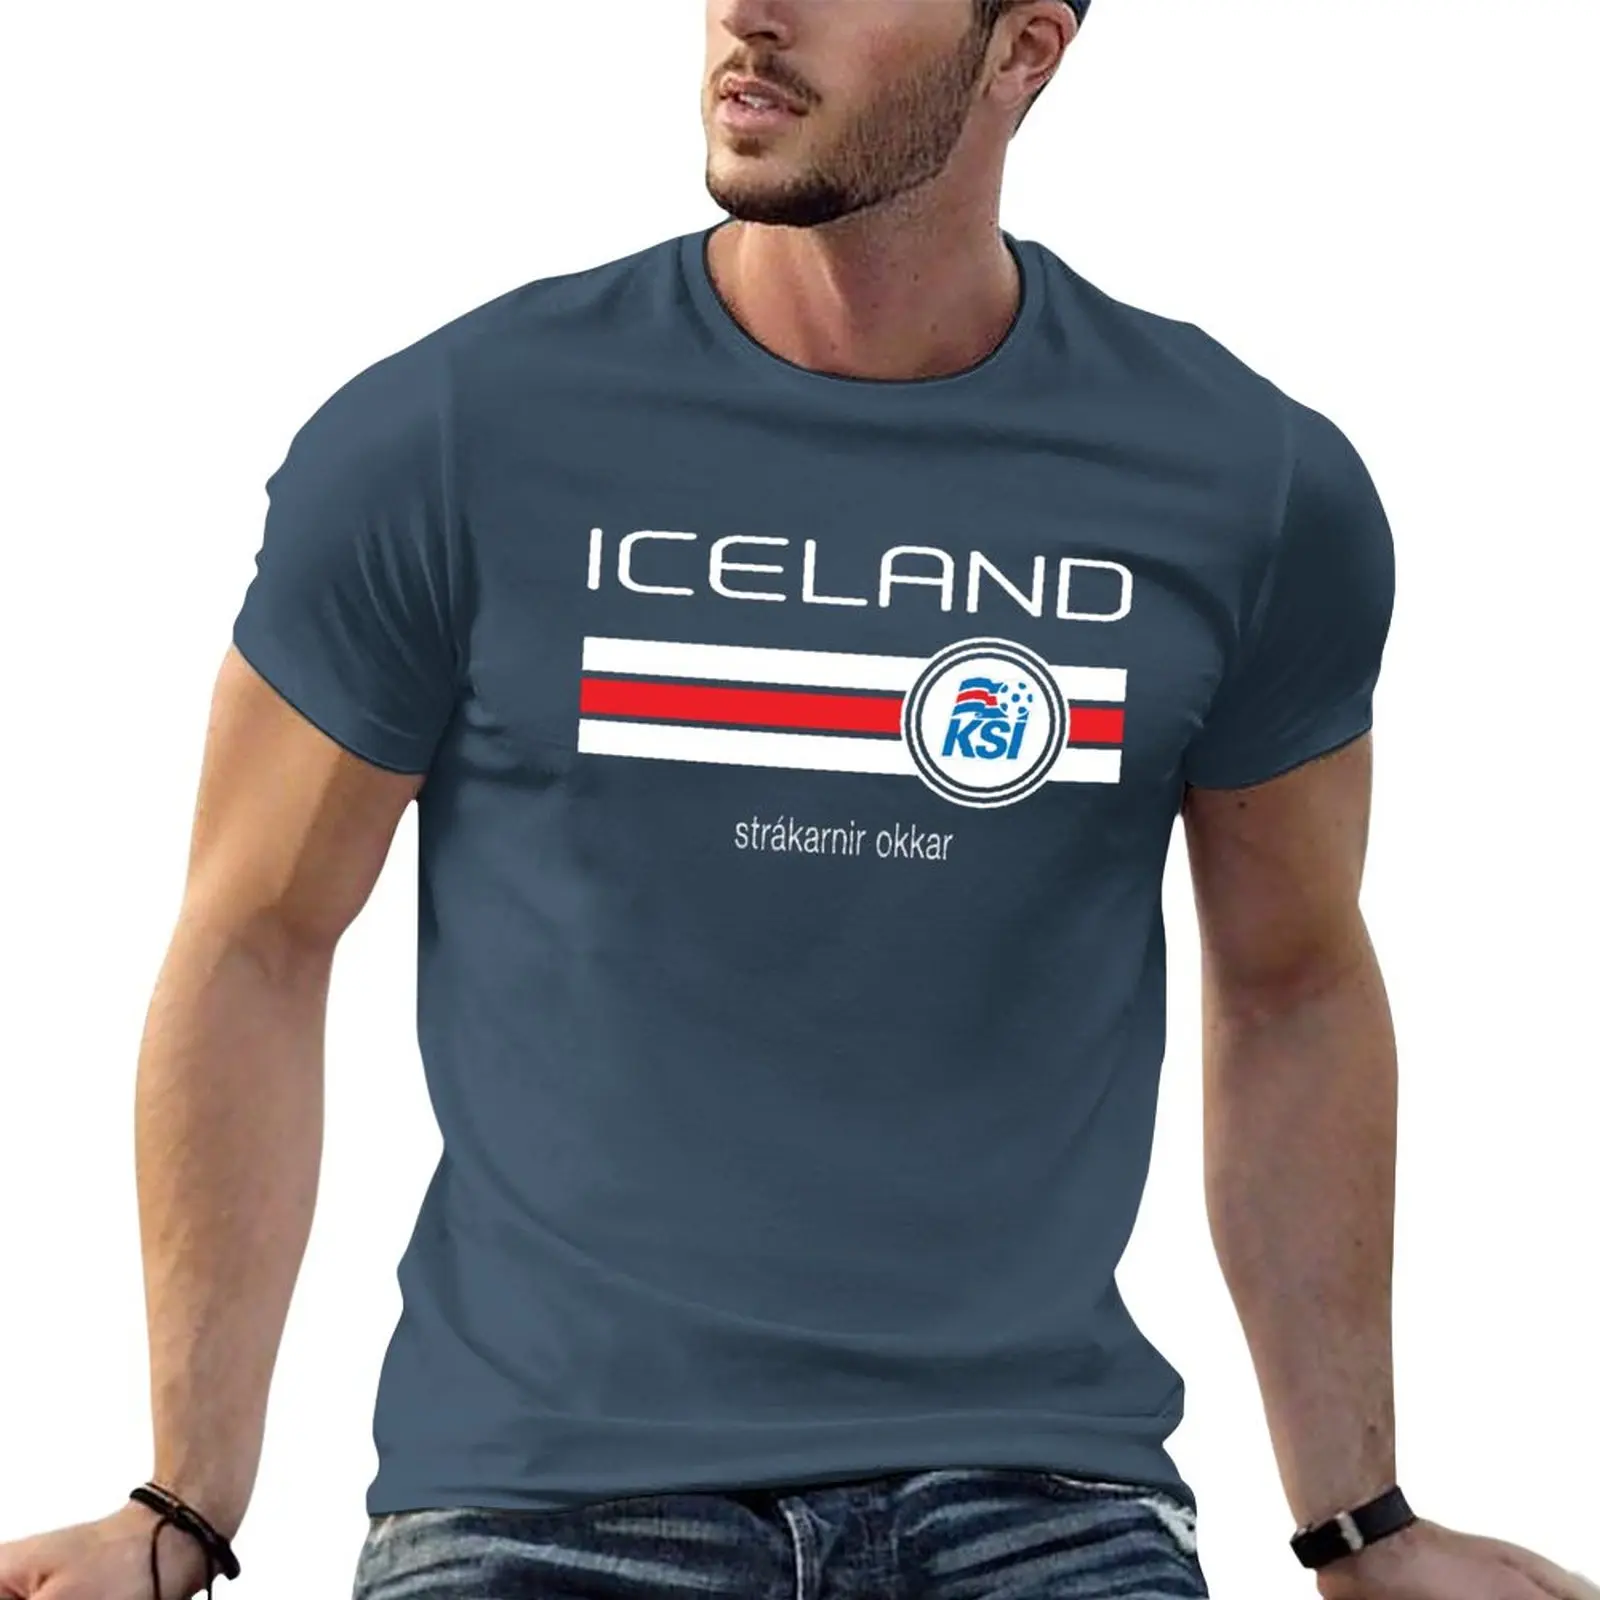 

Новые футболки с изображением футбола-Исландии (домашняя синяя), футболки без рисунка, индивидуальные мужские футболки, упаковка